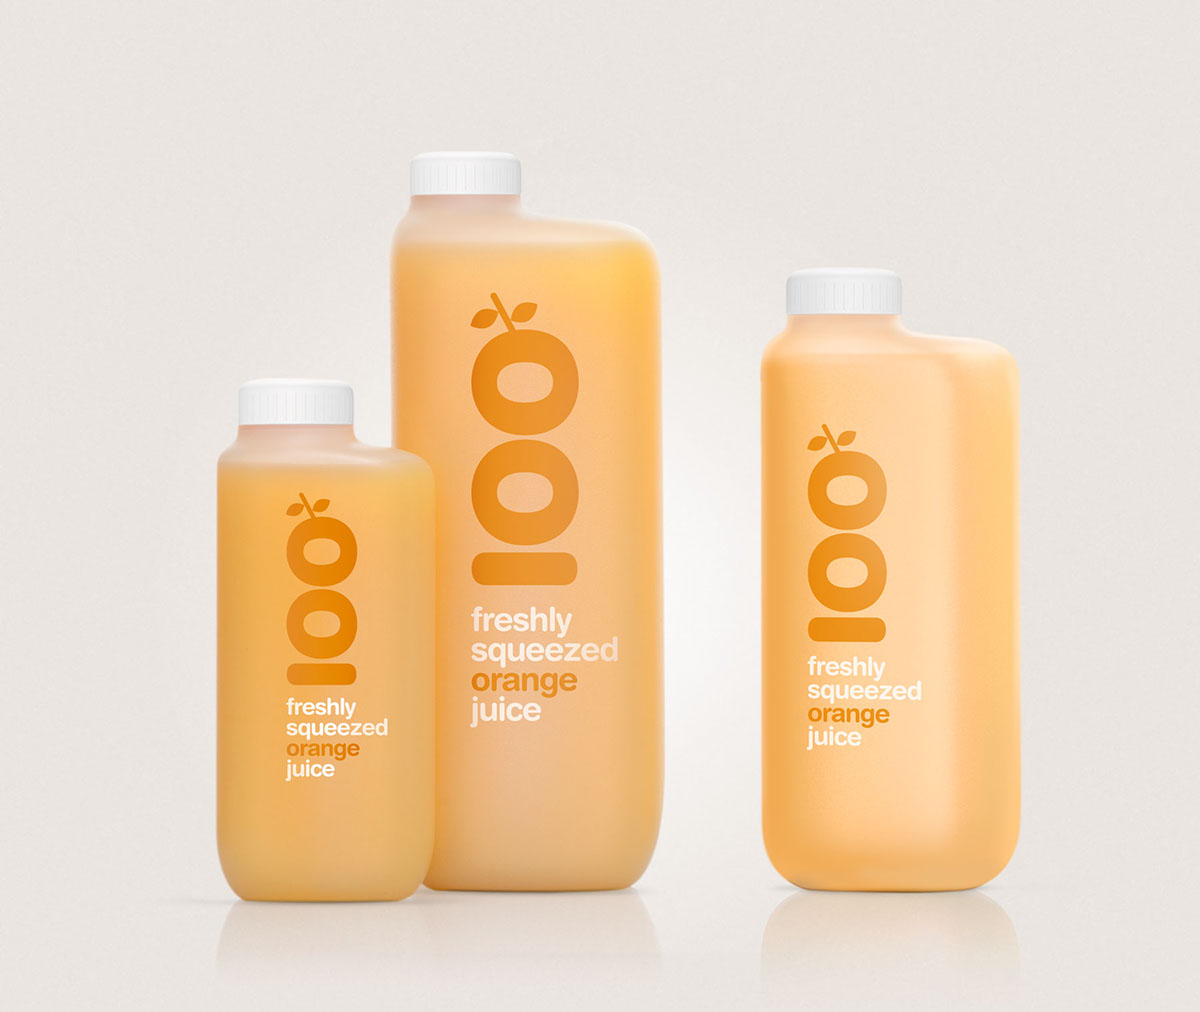 product design  graphic design  Packaging Orange Juice fresh orange rounded citrus HDPE plastic refill